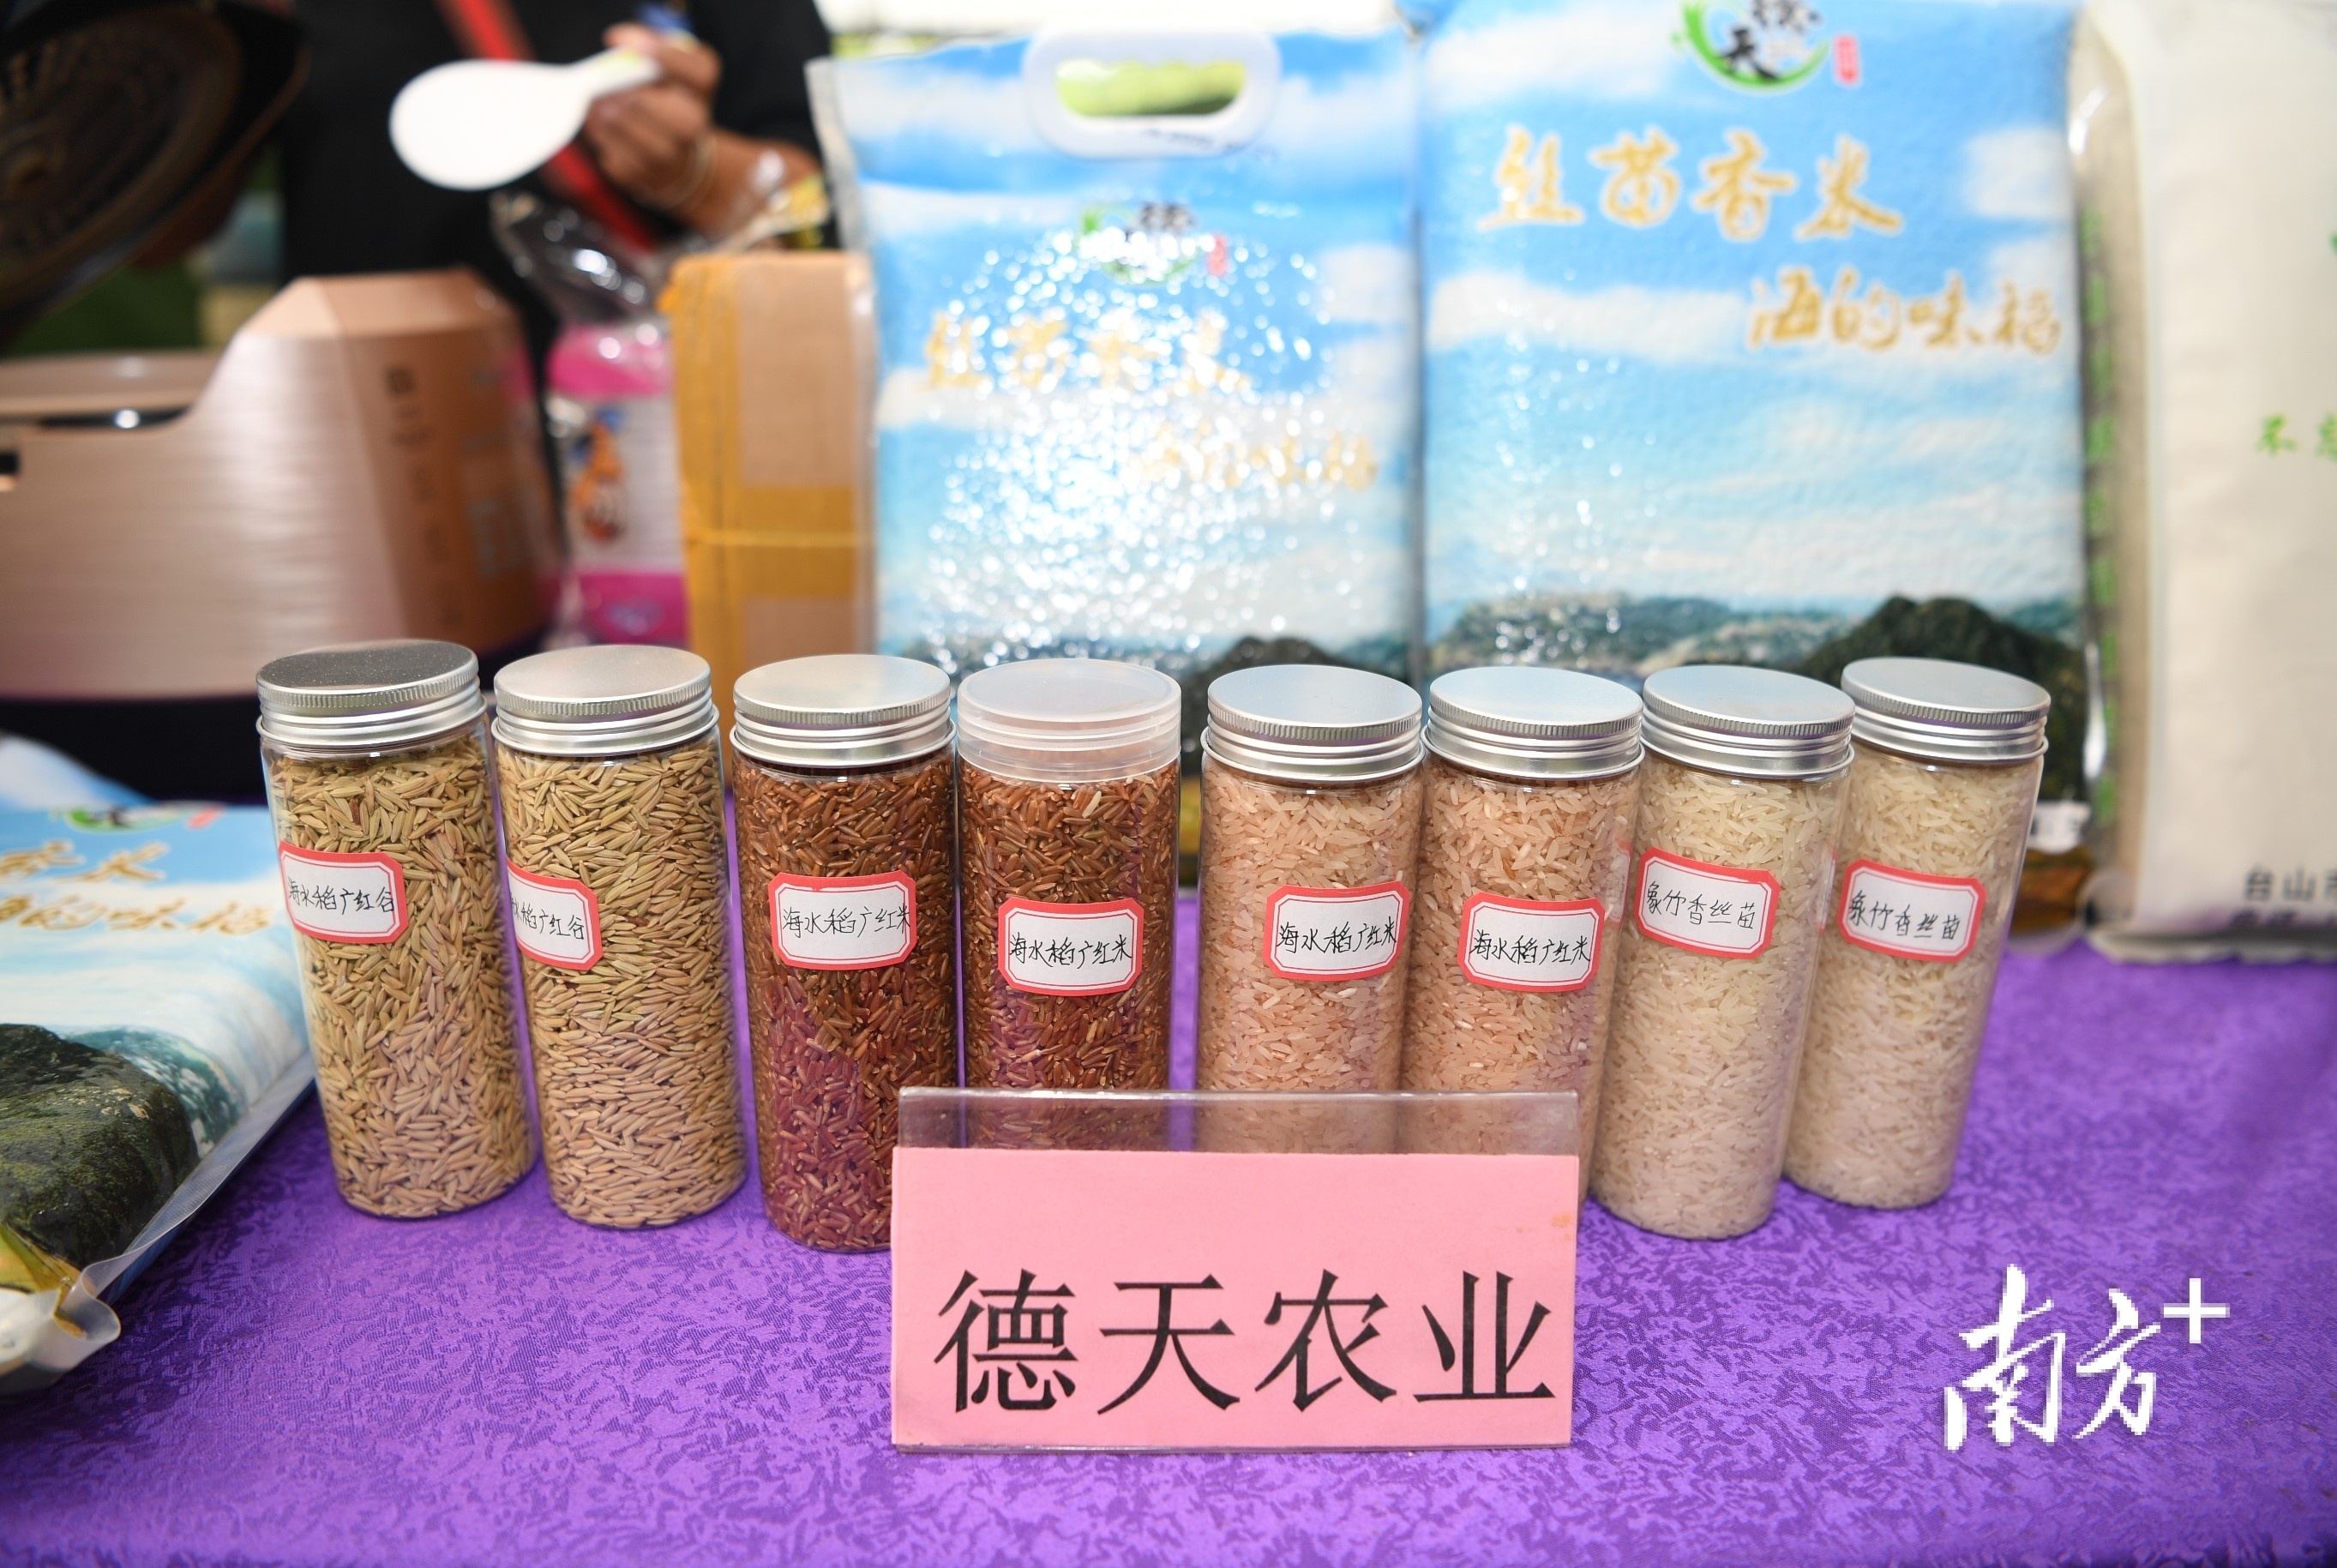 江门出产的多种稻米。  南方+ 杨兴乐 拍摄